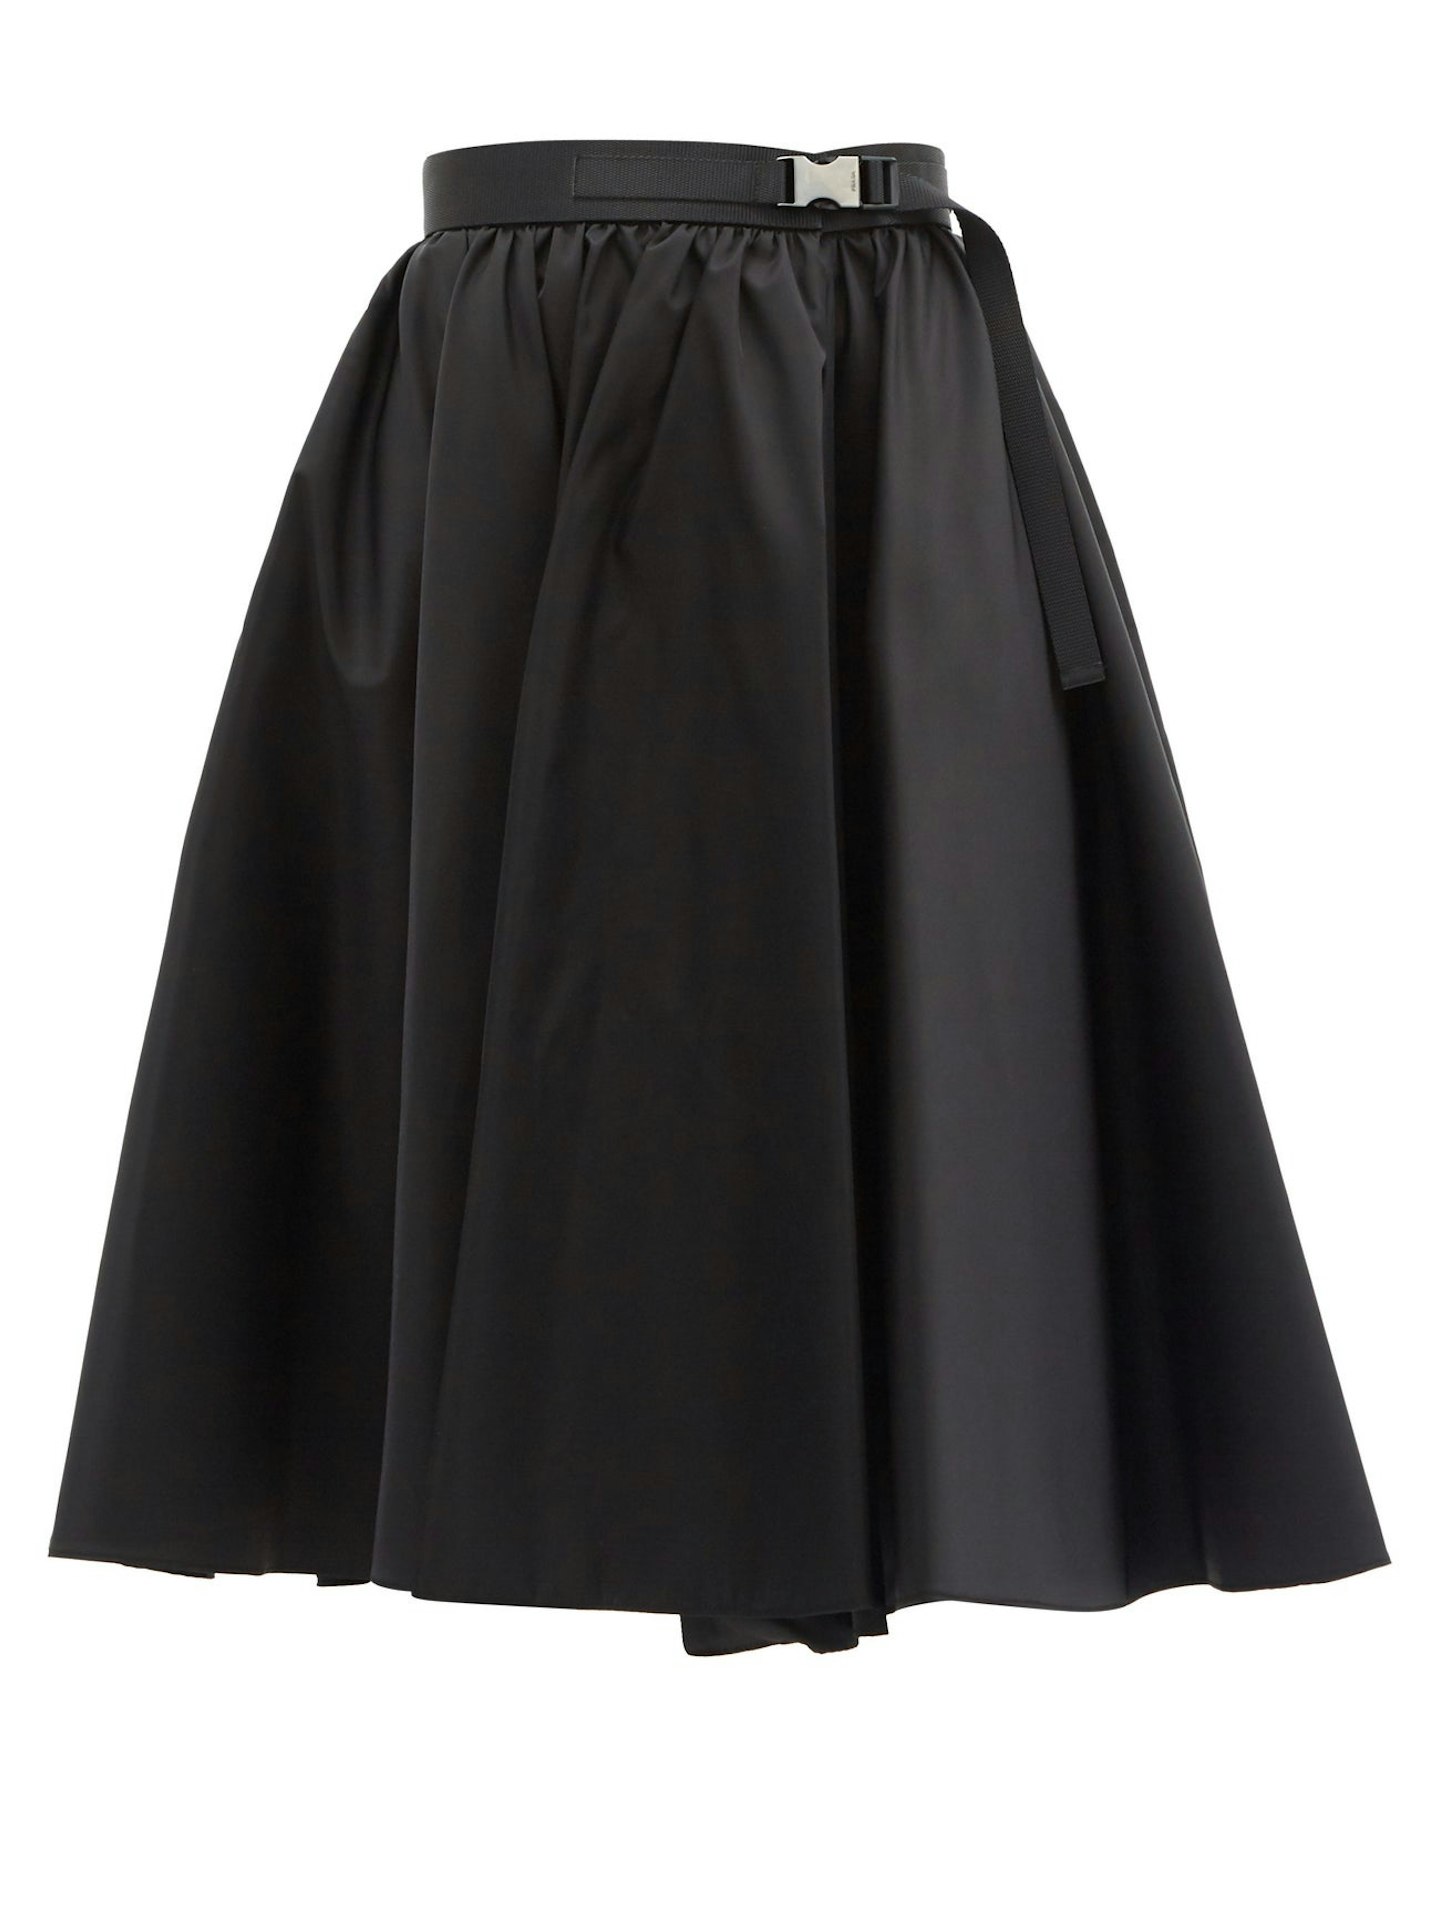 Prada, High Rise Nylon Skirt, £880 at Net-a-Porter